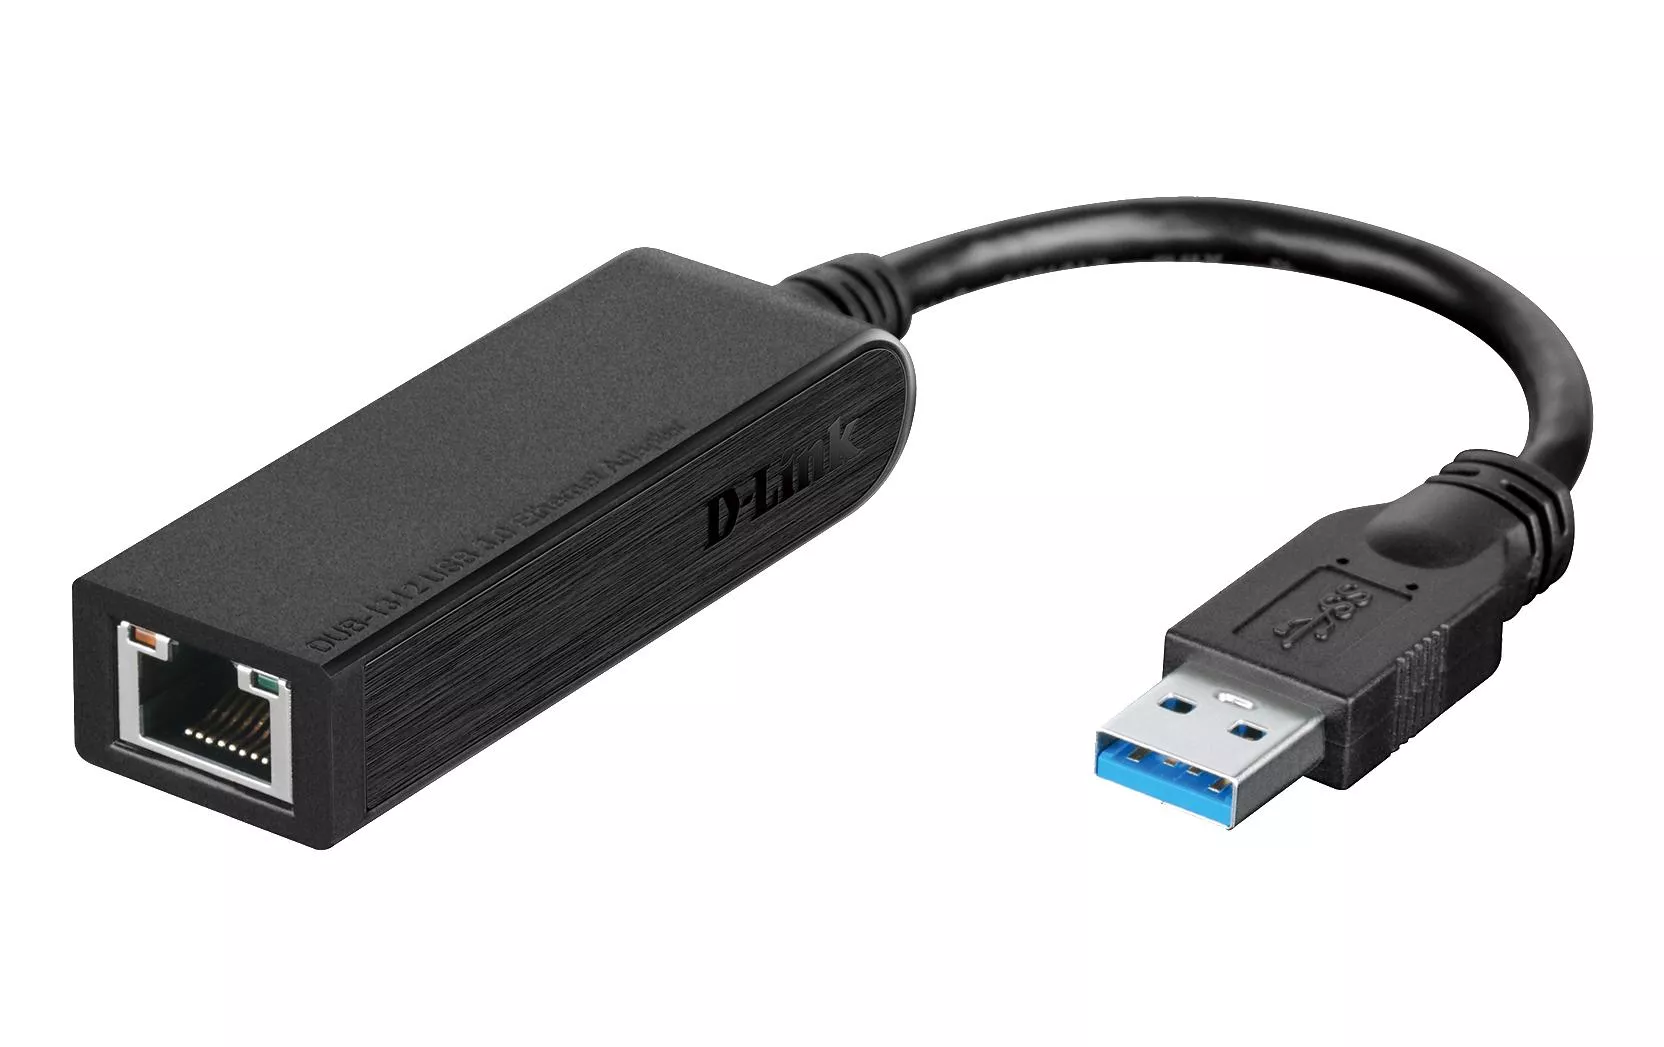 Netzwerk-Adapter DUB-1312 1Gbps USB 3.0